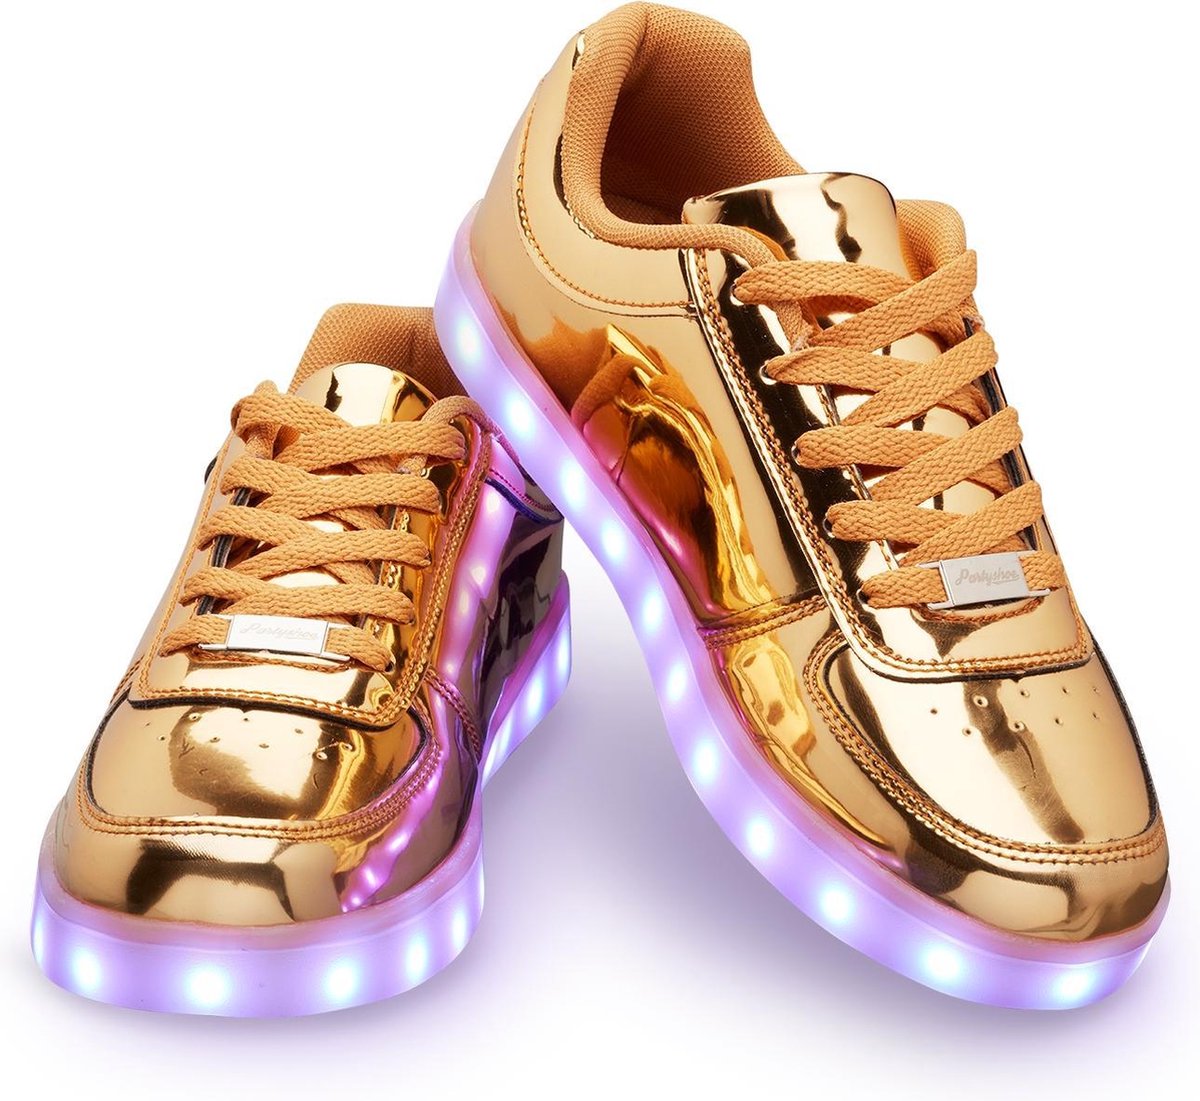 Schoenen met lichtjes - Lichtgevende led schoenen - Goud - Maat 39